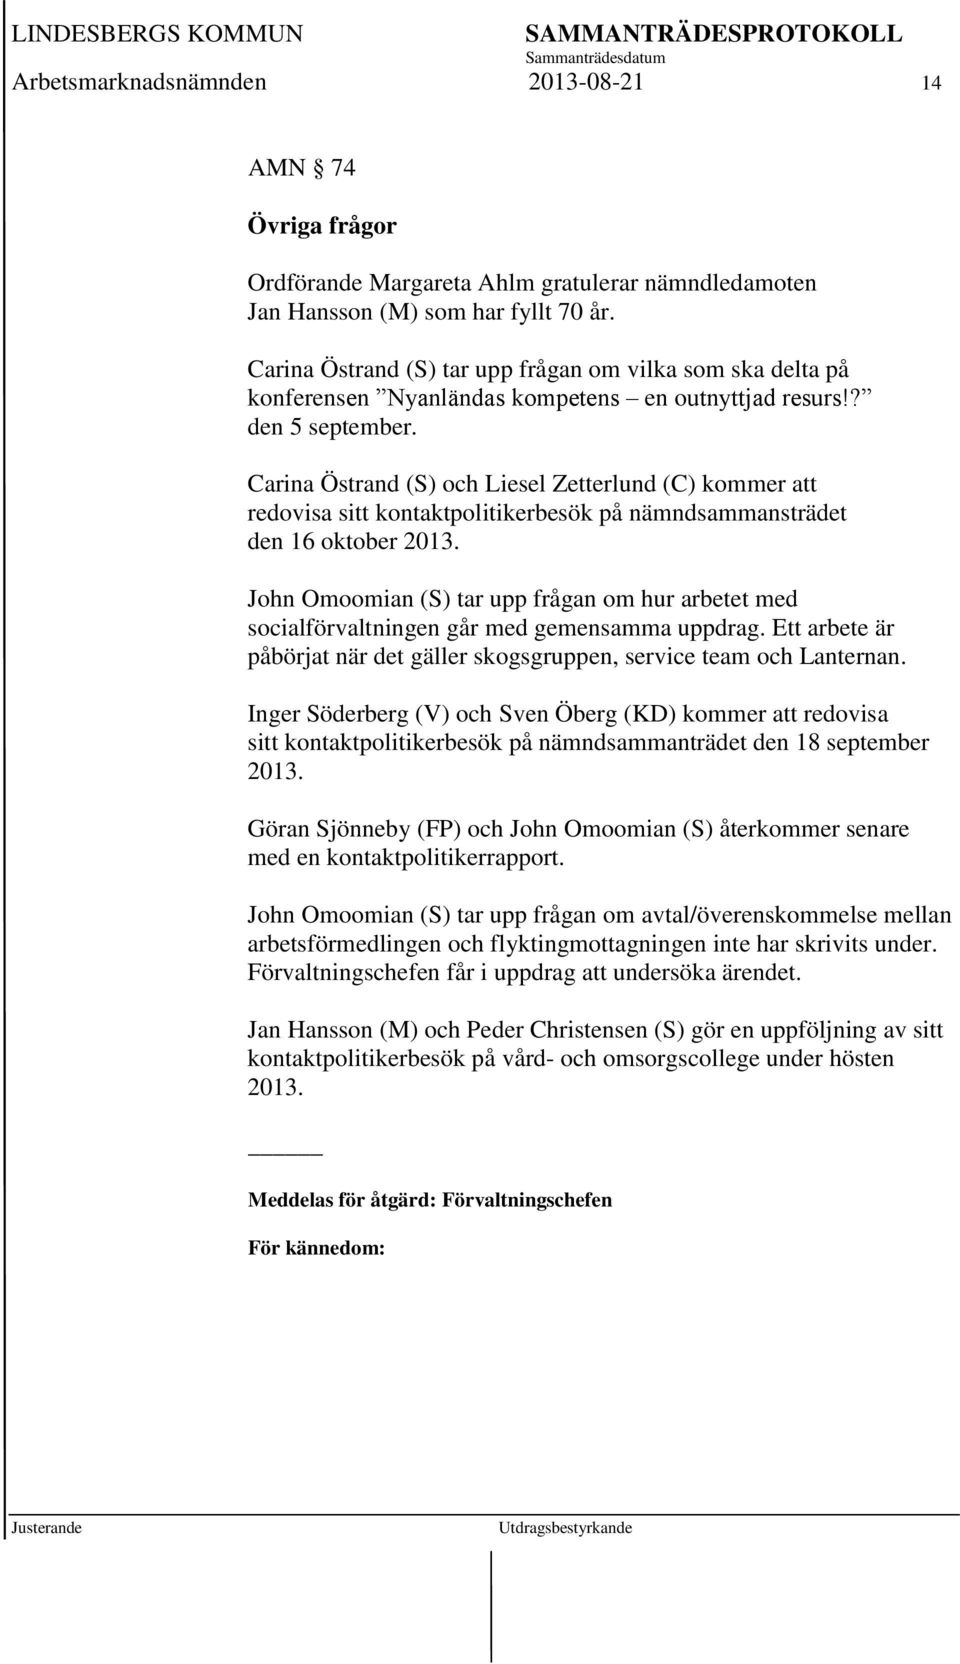 Carina Östrand (S) och Liesel Zetterlund (C) kommer att redovisa sitt kontaktpolitikerbesök på nämndsammansträdet den 16 oktober 2013.